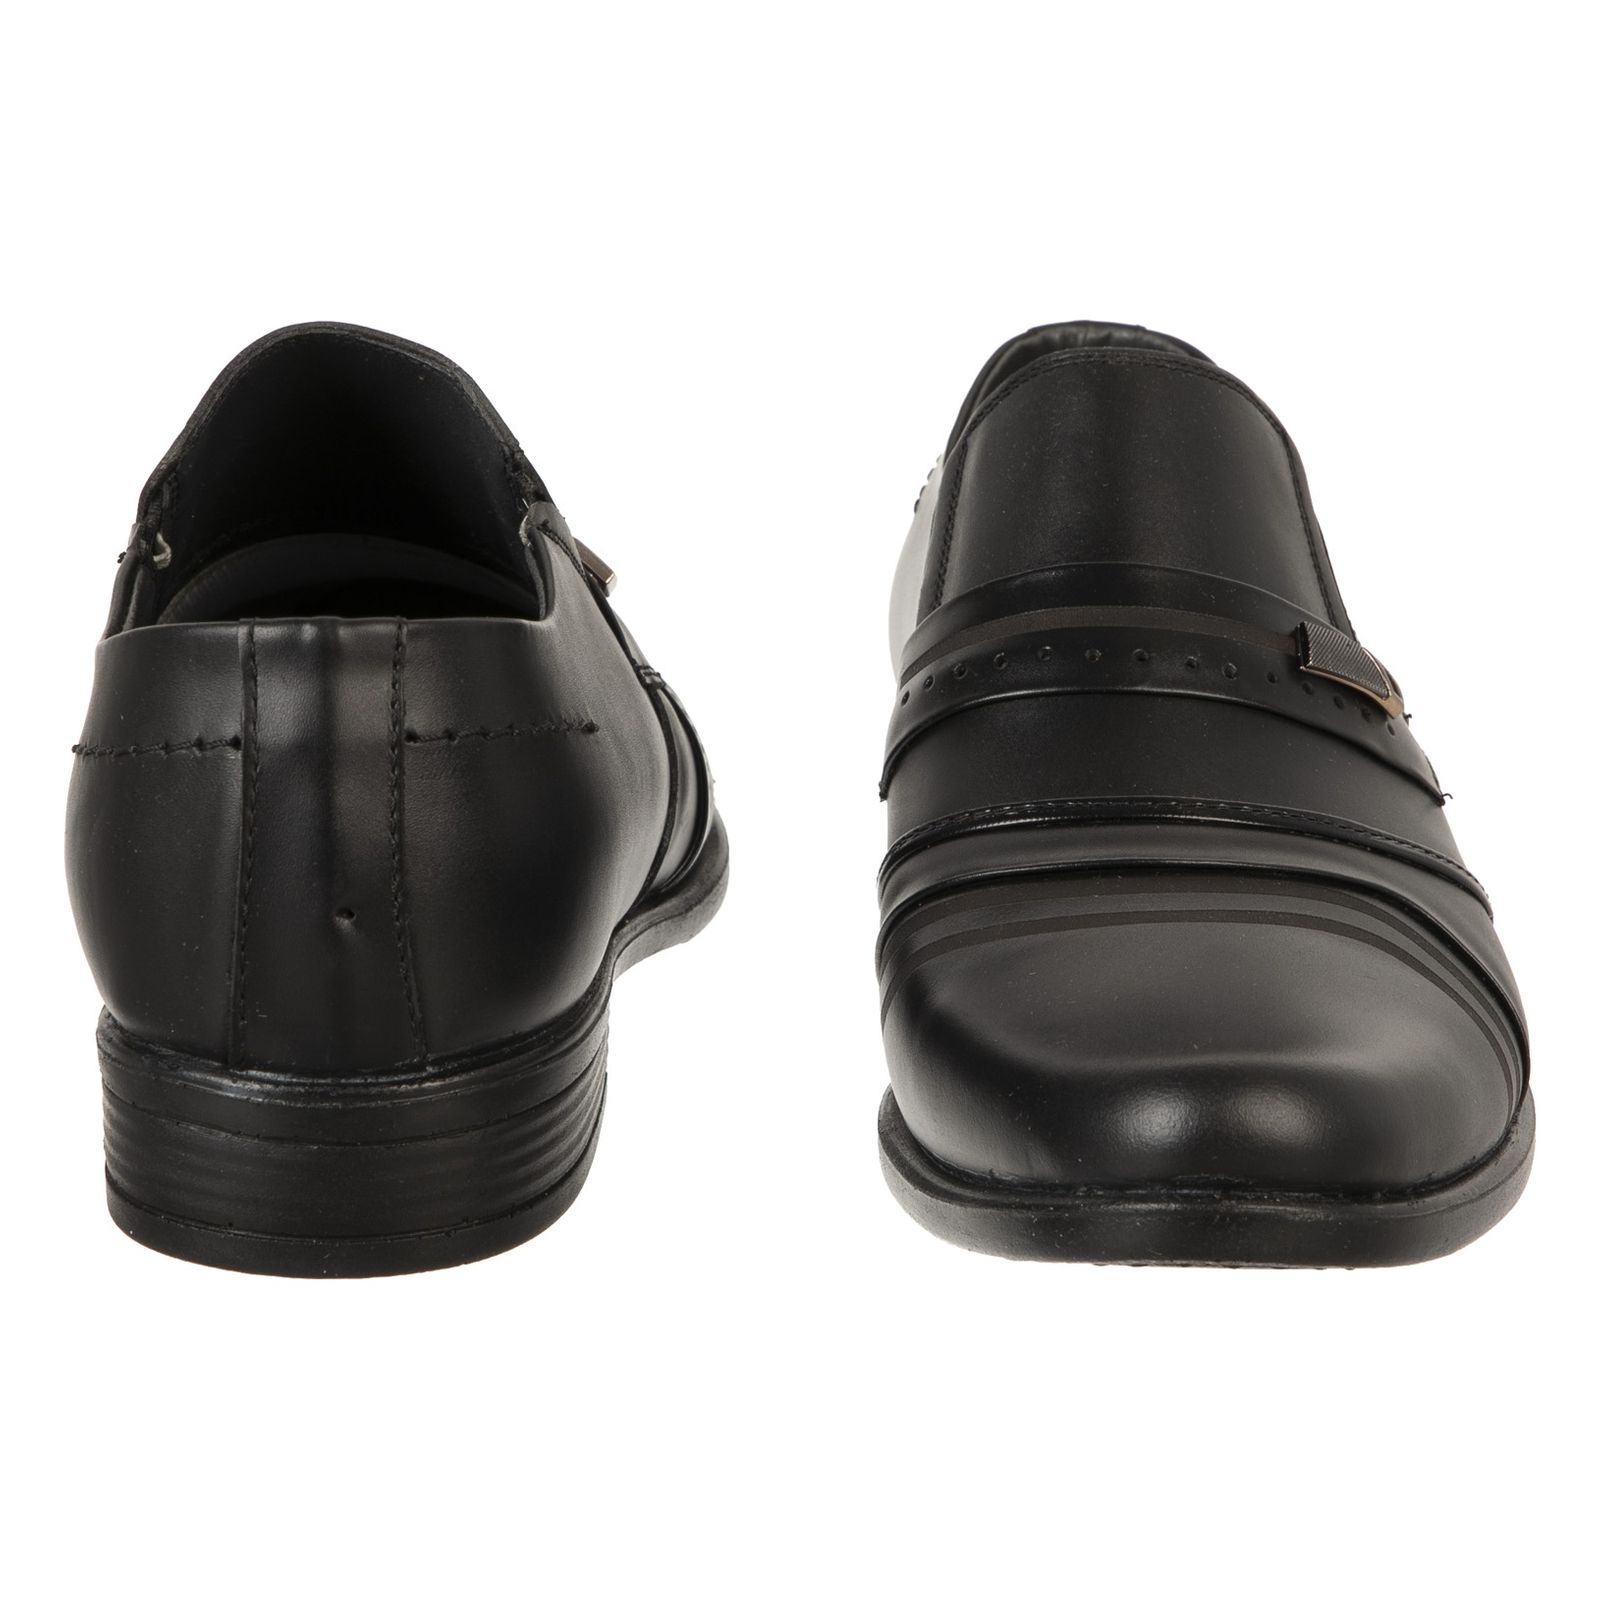 کفش روزمره مردانه دانادل مدل 7716A503101 - مشکی - 5